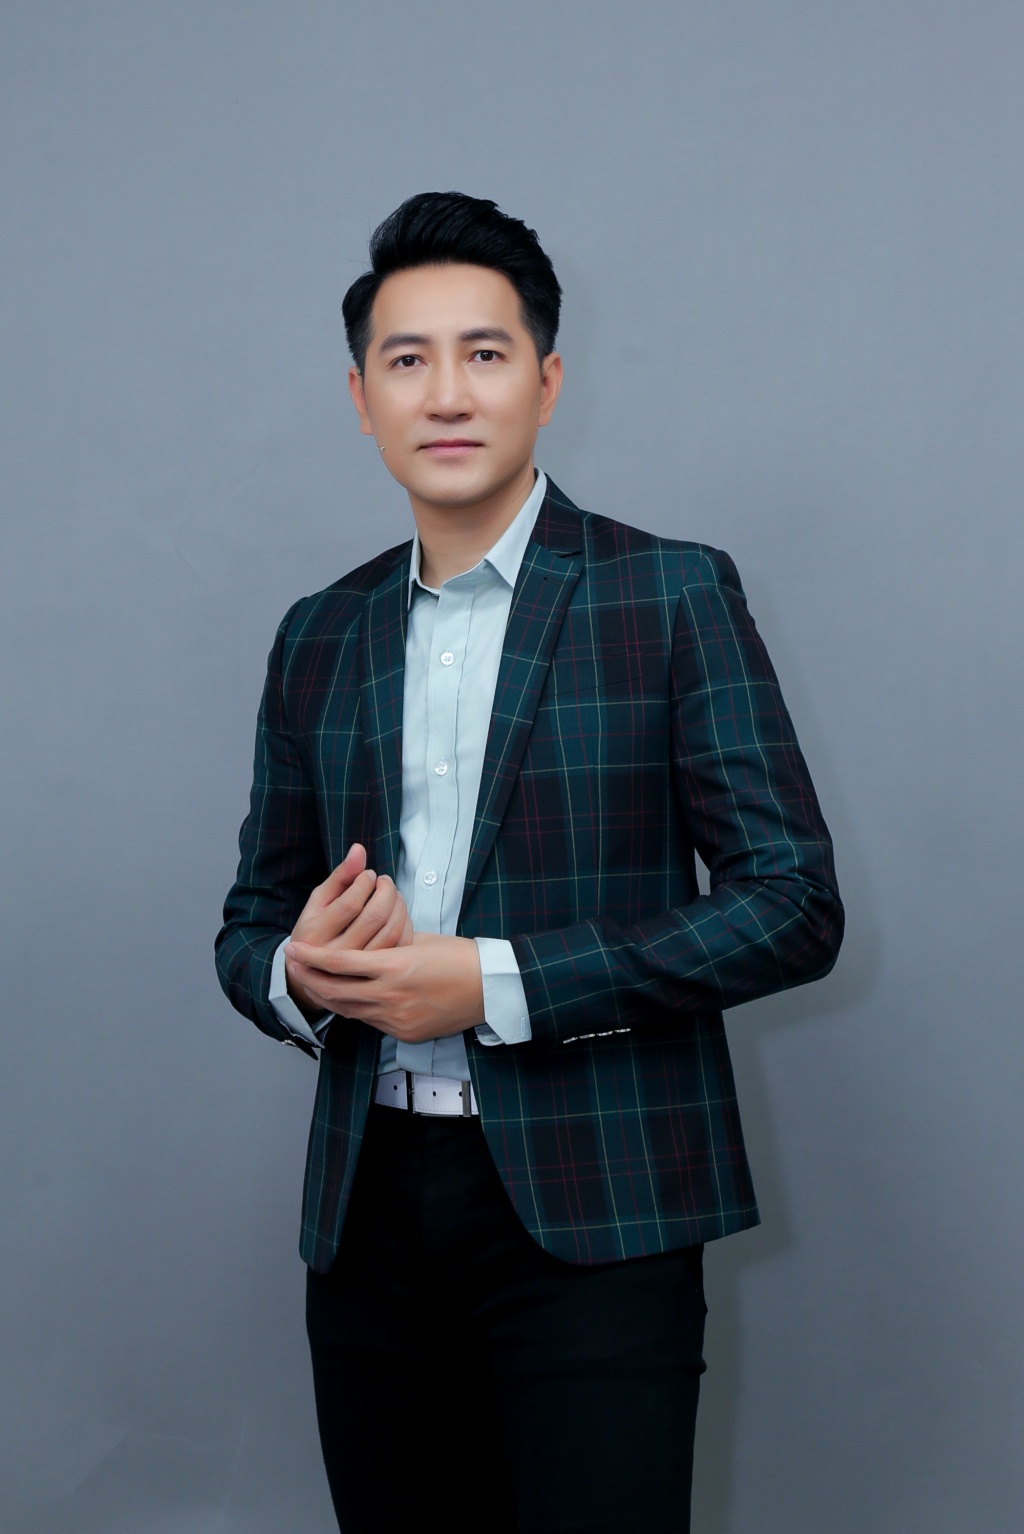 Ca sĩ Nguyễn Phi Hùng: “Múa đám cưới thu nhập còn cao hơn nghệ sĩ múa chuyên nghiệp” - Ảnh 3.